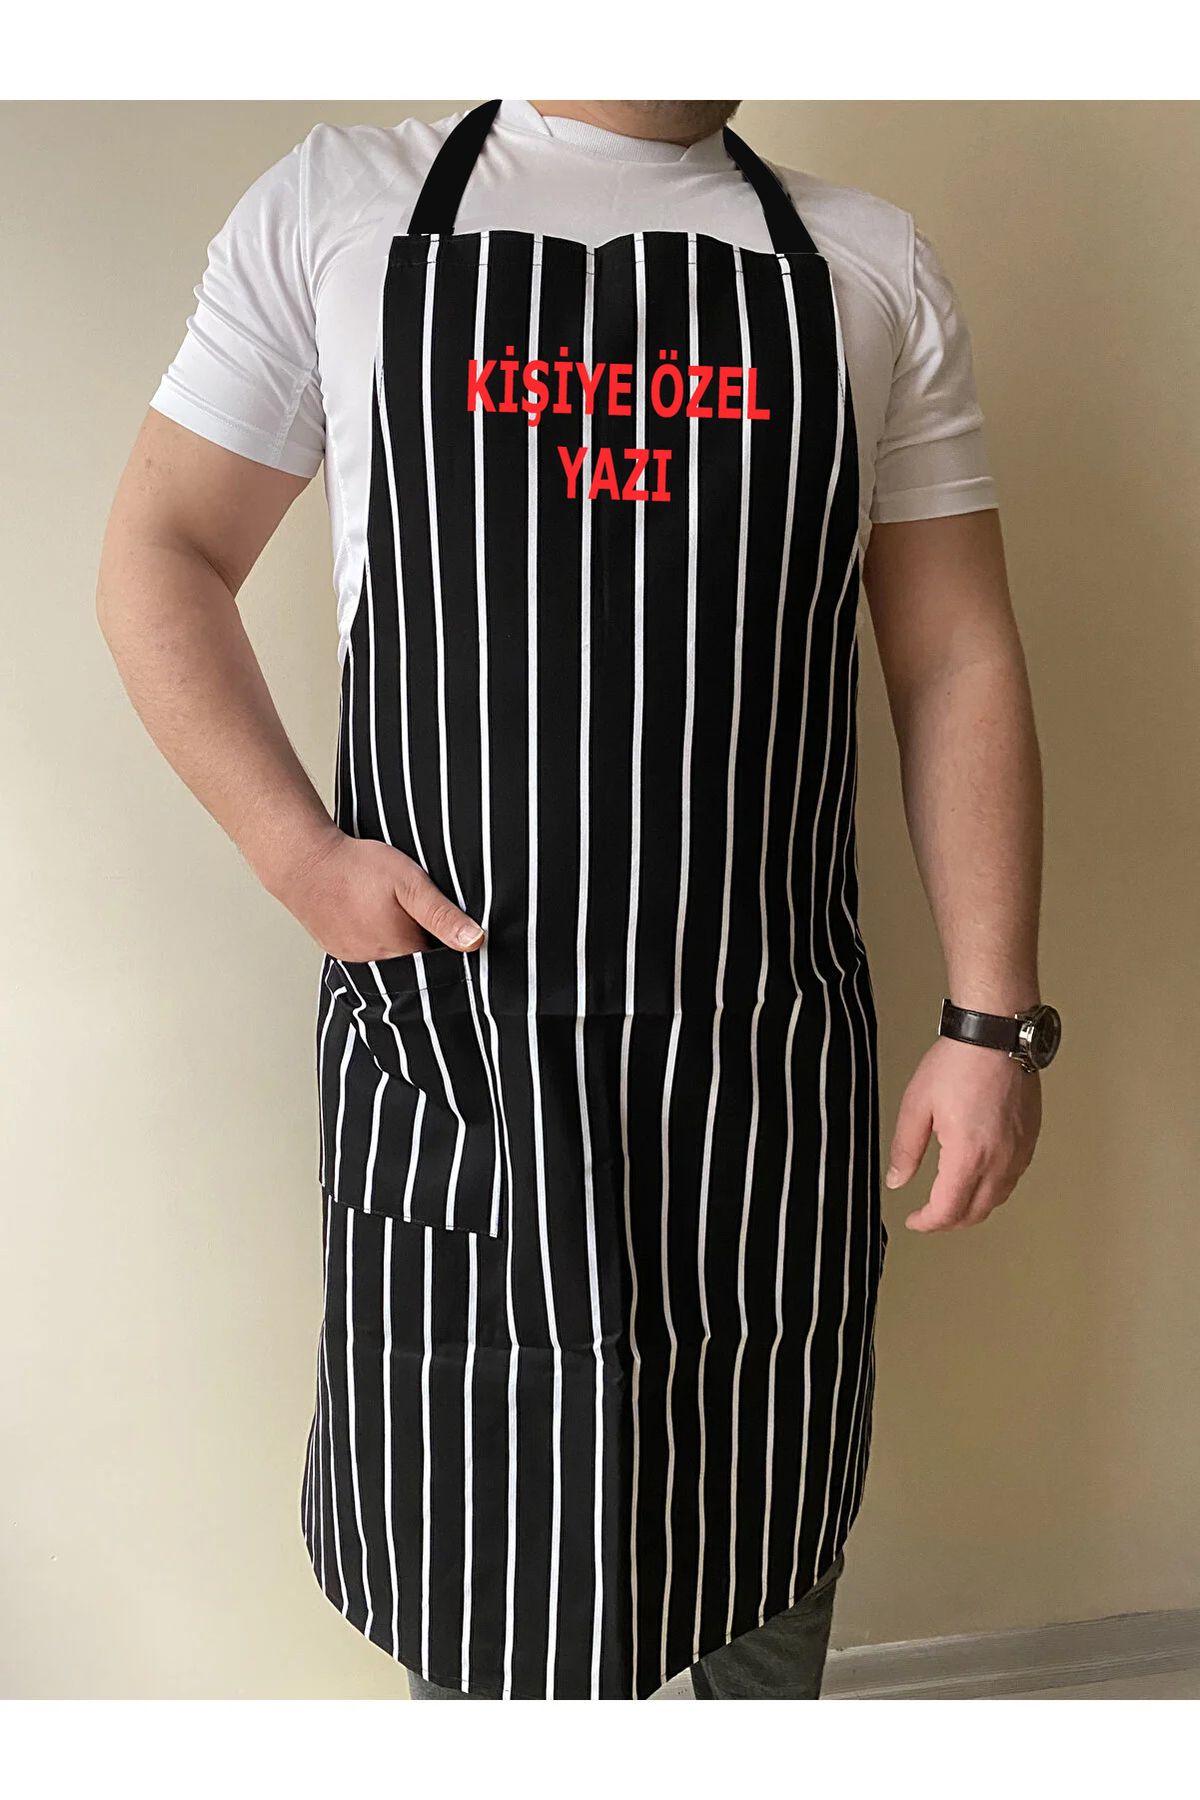 Genel Markalar Mutfak Önlüğü Garson Aşçı Boydan Önlük Cepli Unisex Siyah Beyaz Çizgili Gabardin Kumaş